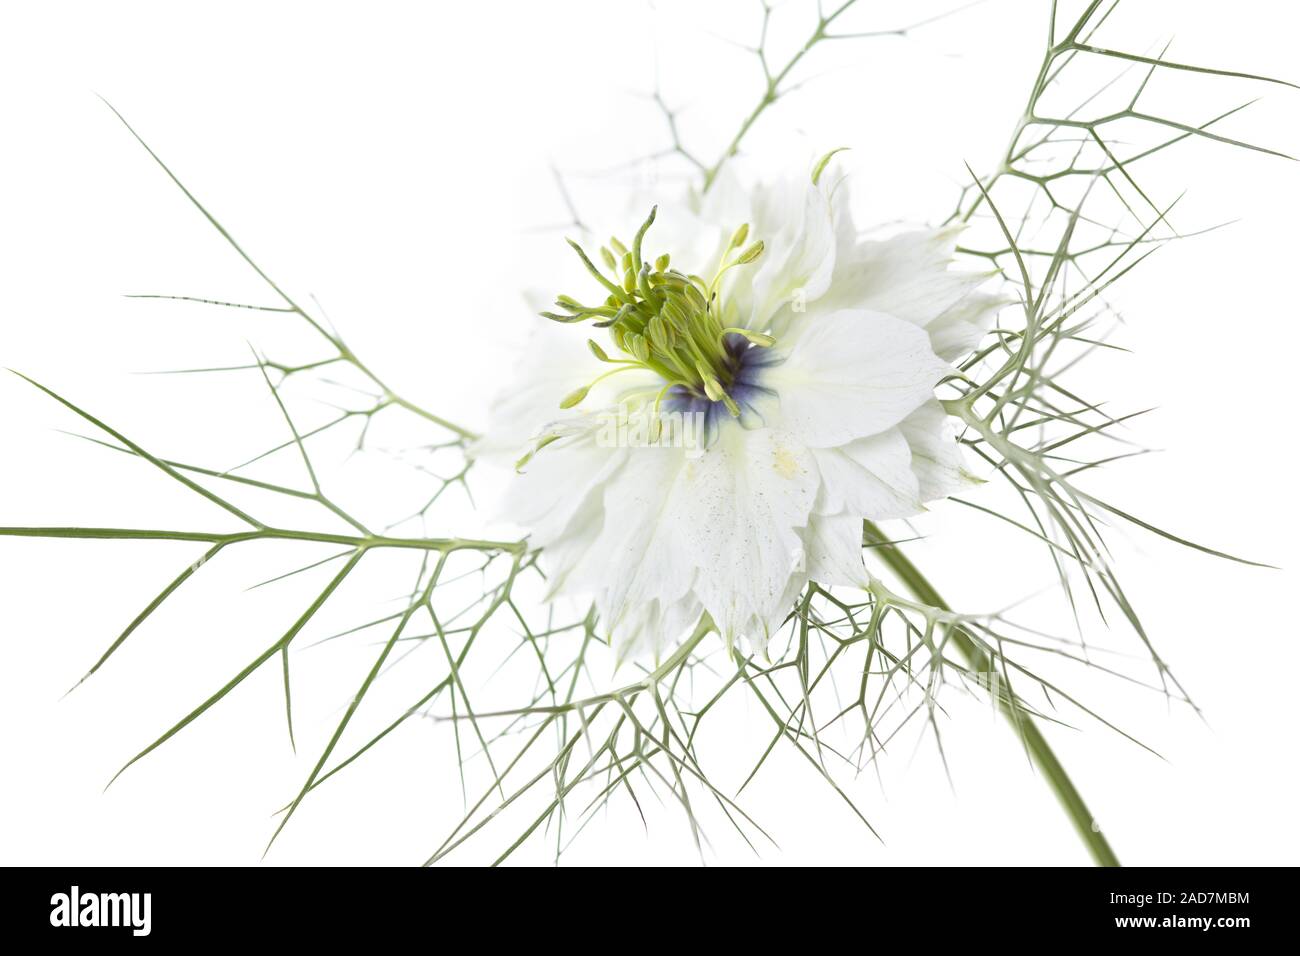 Liebe-in-a-mist Nigella Damascena Flower, Stockfoto